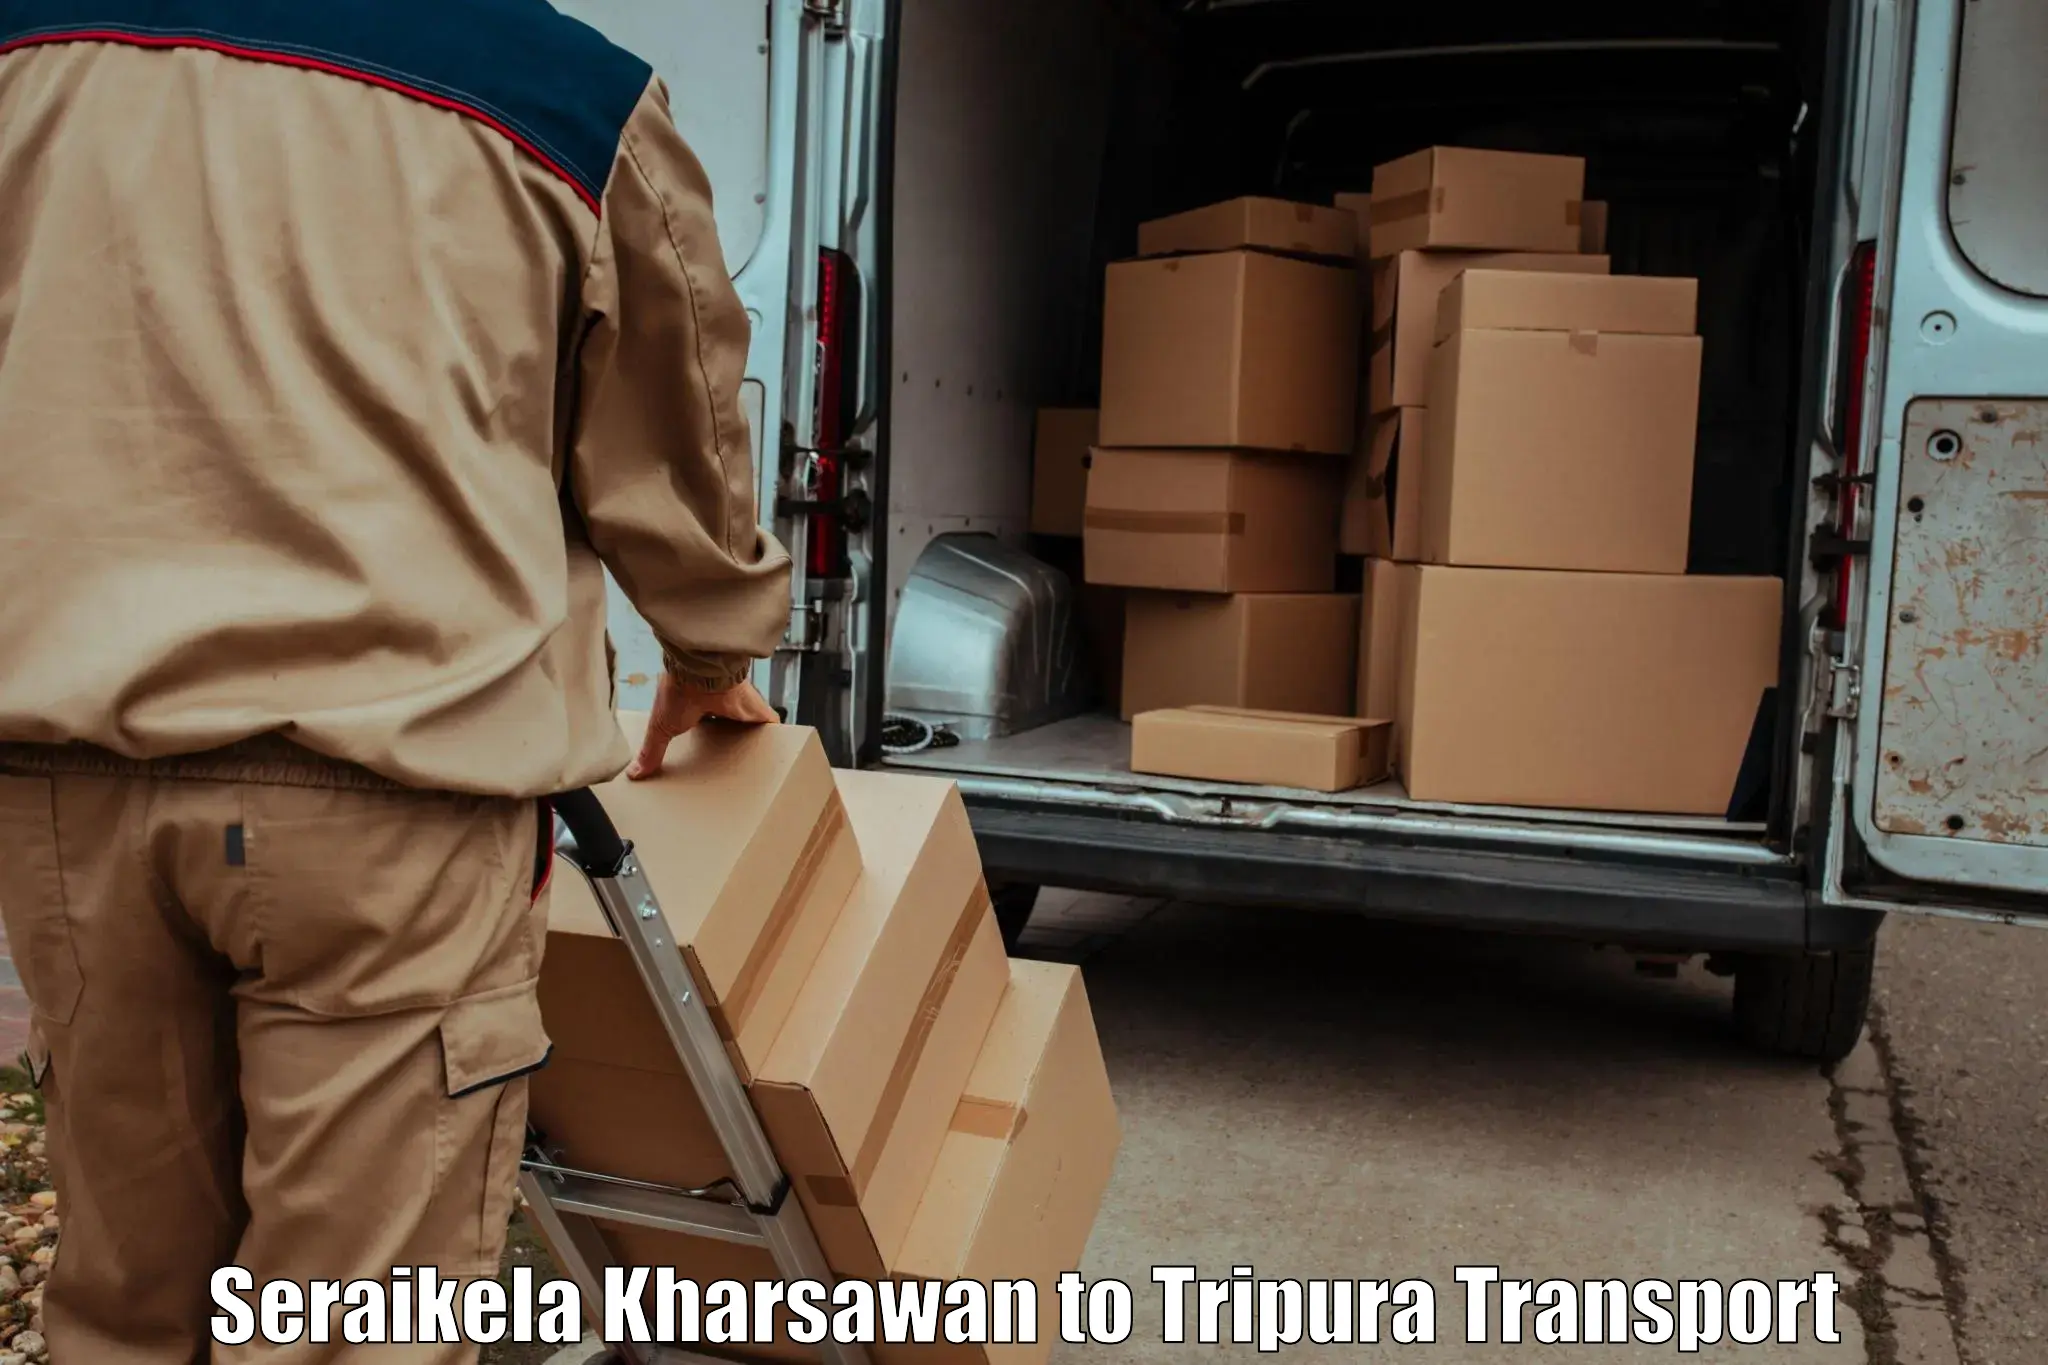 Furniture transport service Seraikela Kharsawan to Bishalgarh